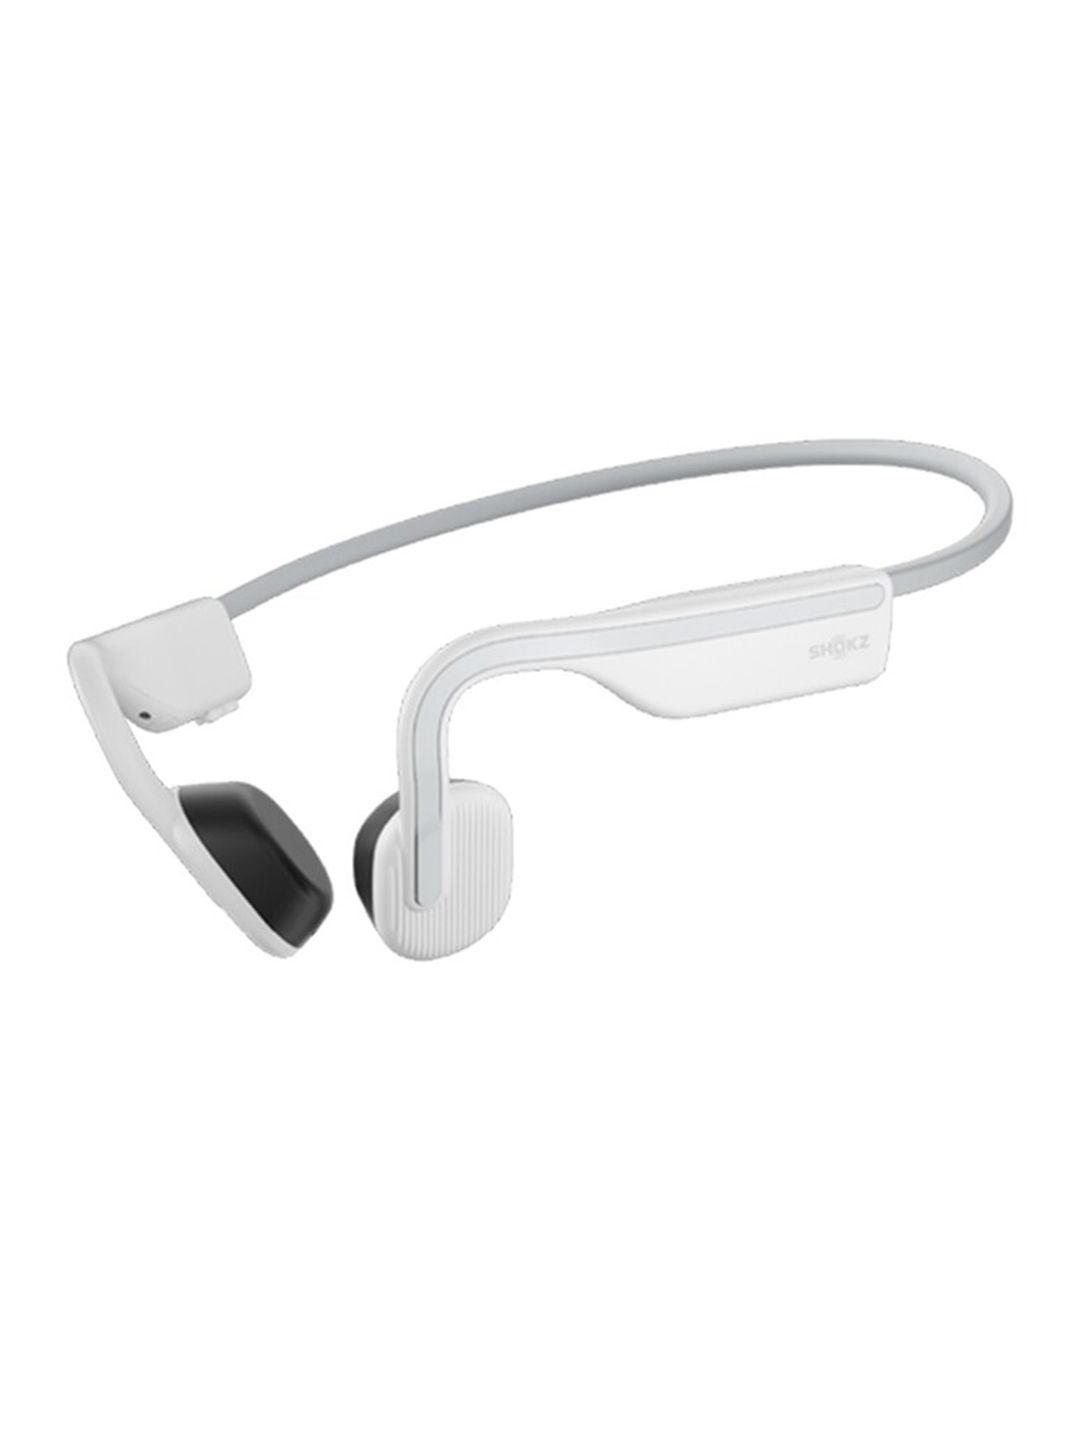 shokz openmove on-ear bluetooth sport bone conduction sweatproof wireless headphones